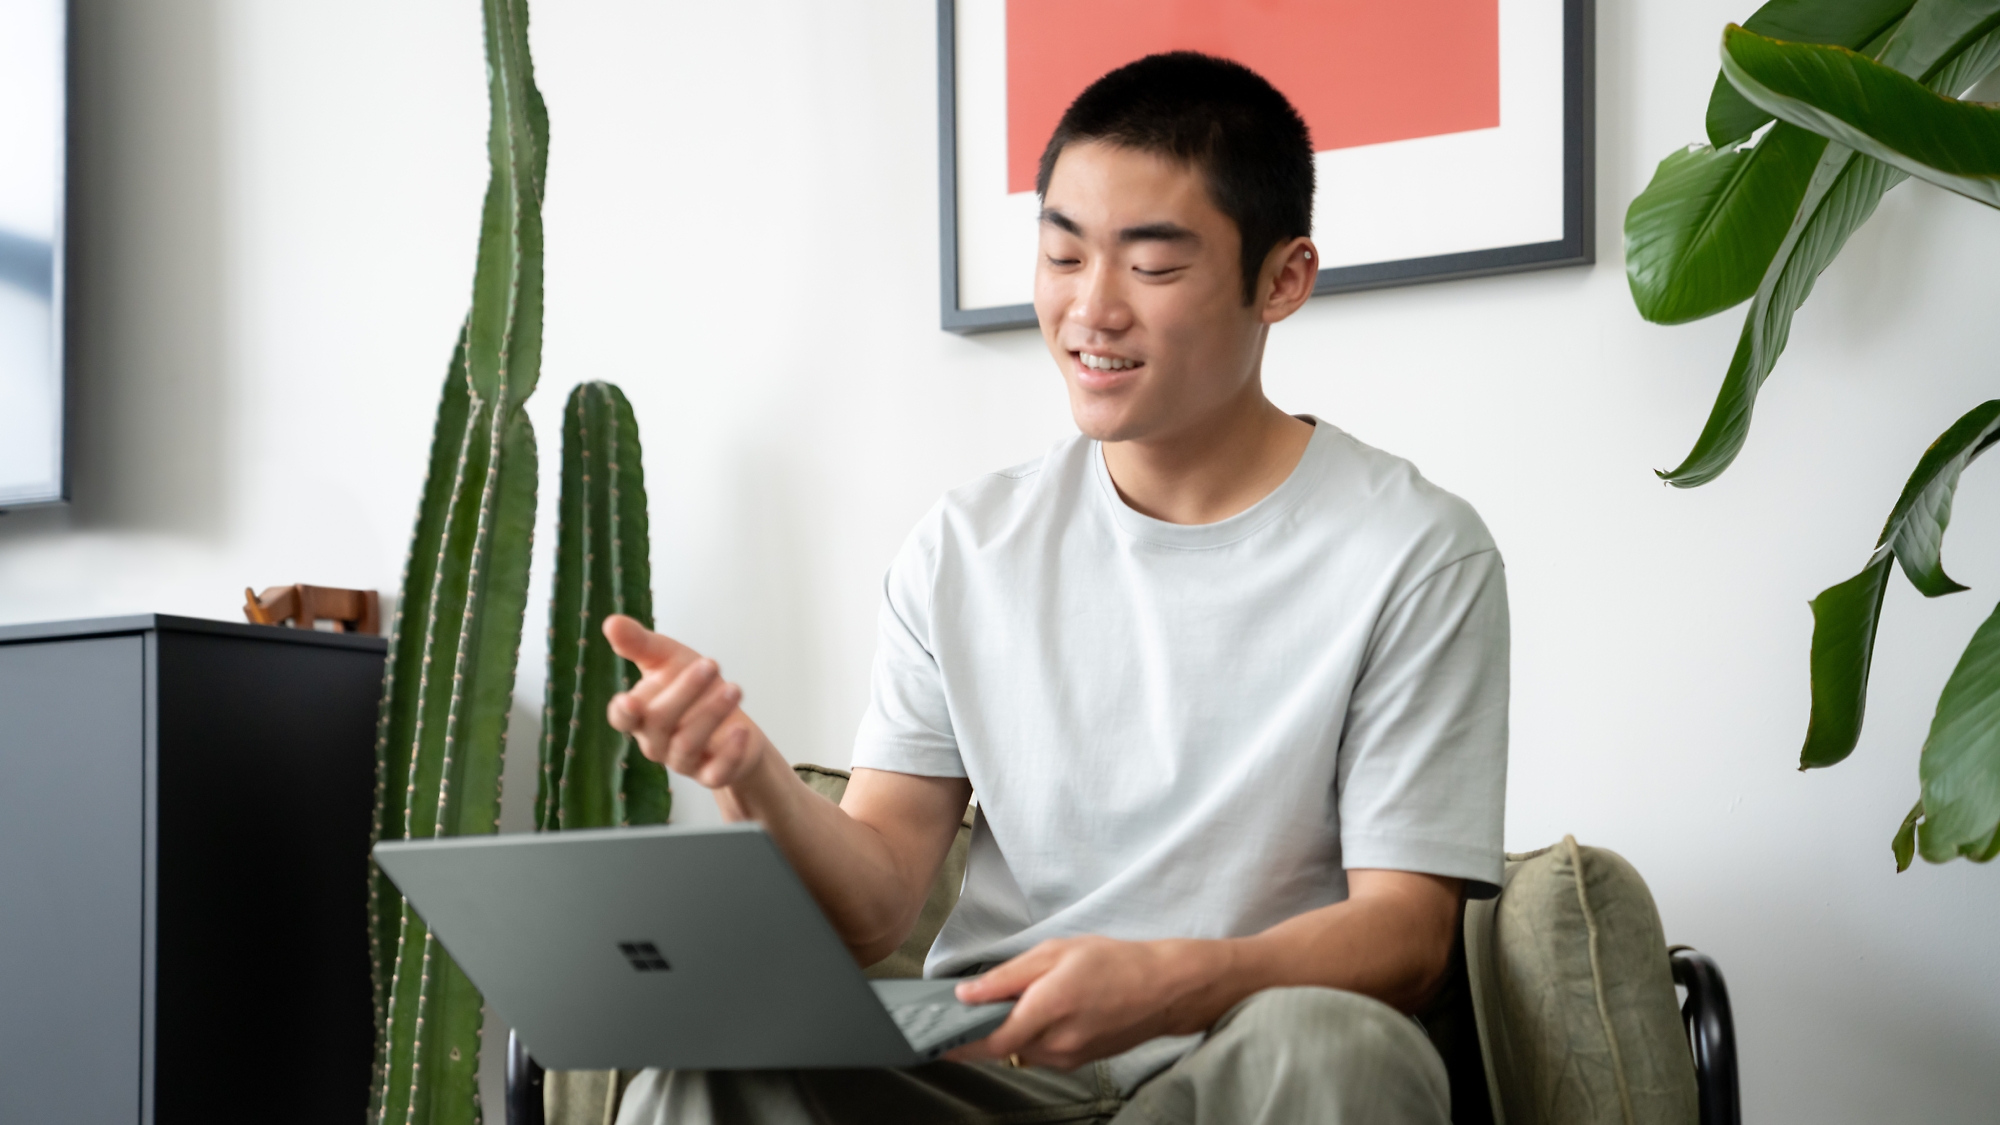 Jeune homme utilisant avec un air heureux un ordinateur portable dans une pièce moderne avec des plantes d’intérieur.